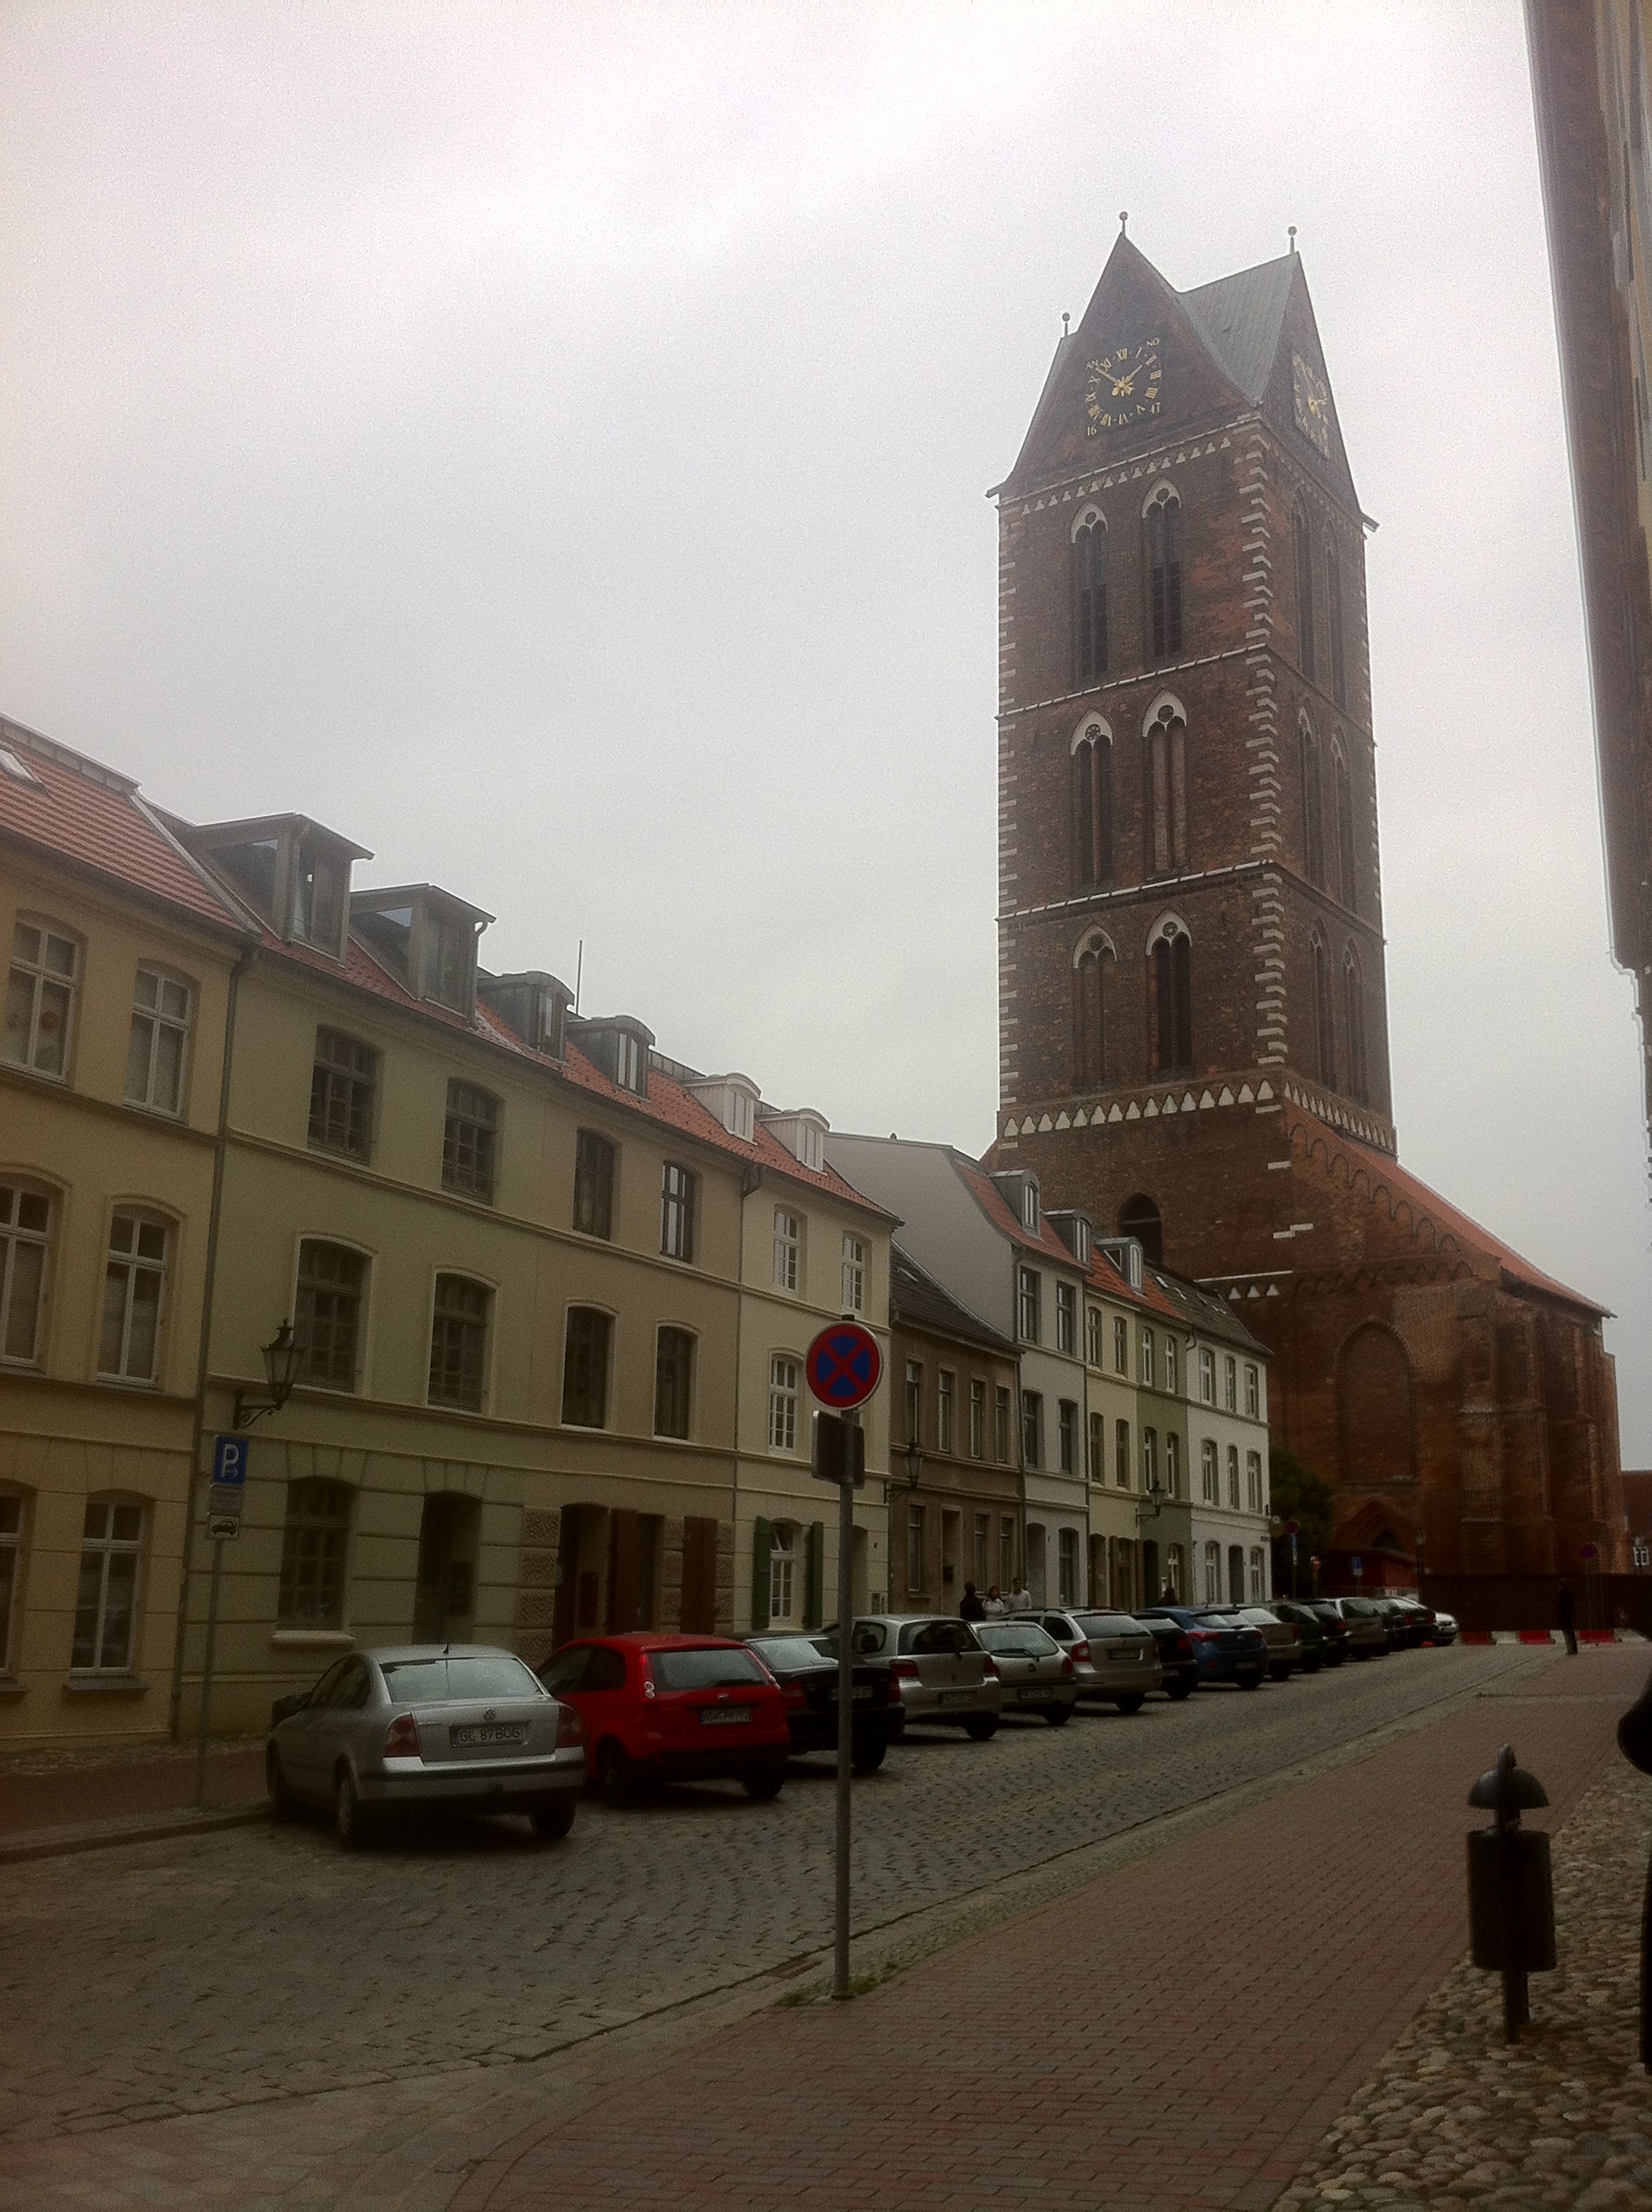 St. Marien Kirche in Wismar